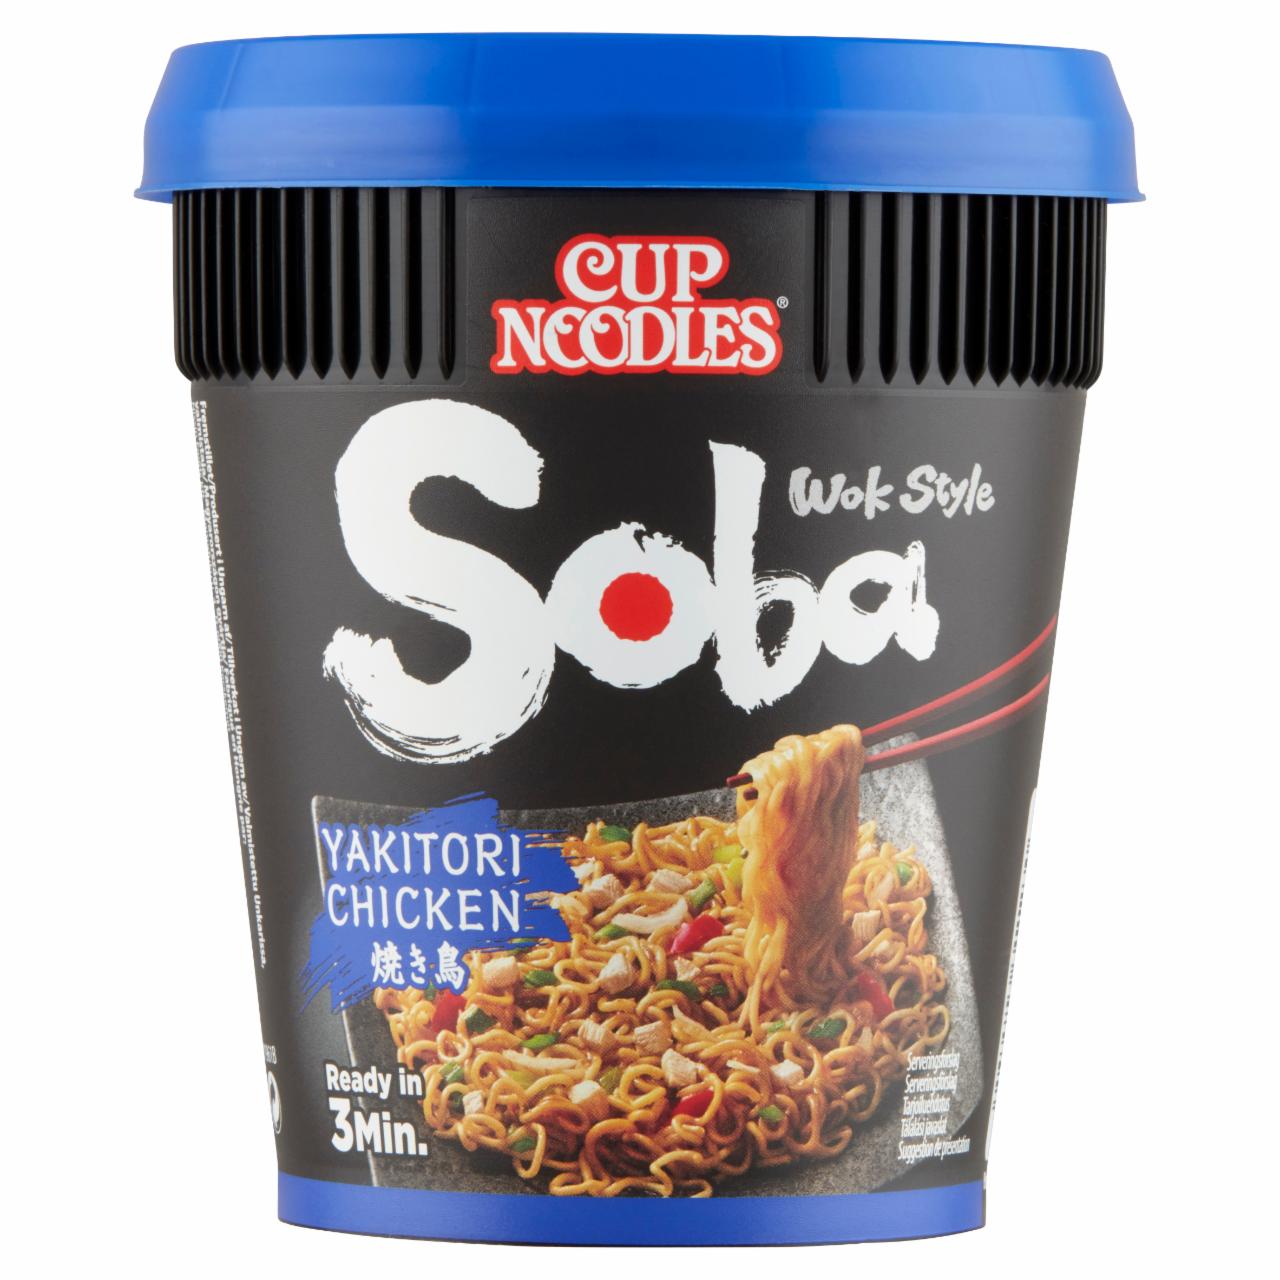 Képek - Nissin Cup Noodles Soba Wok Style instant tészta búzalisztből yakitori csirke ízű szósszal 89 g